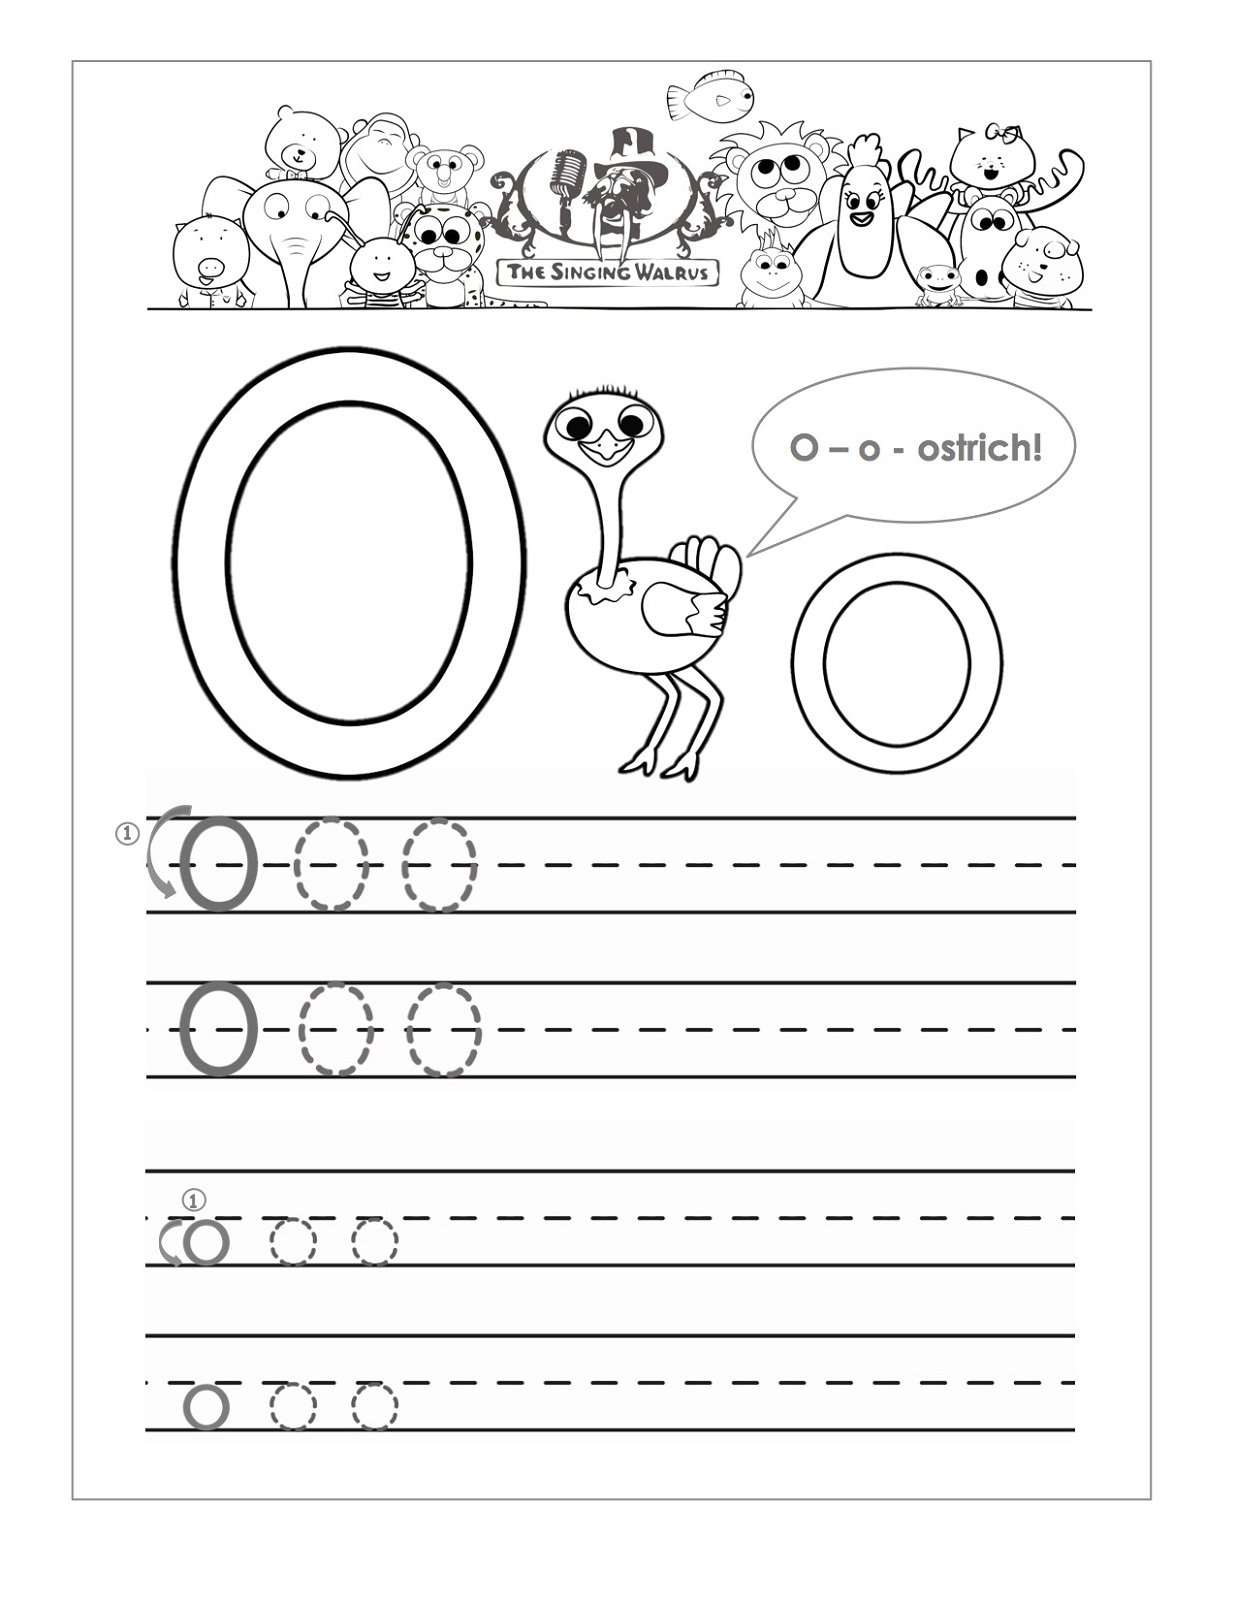 Letter O Worksheets For Preschool | Activity Shelter in Letter O Worksheets Free Printable